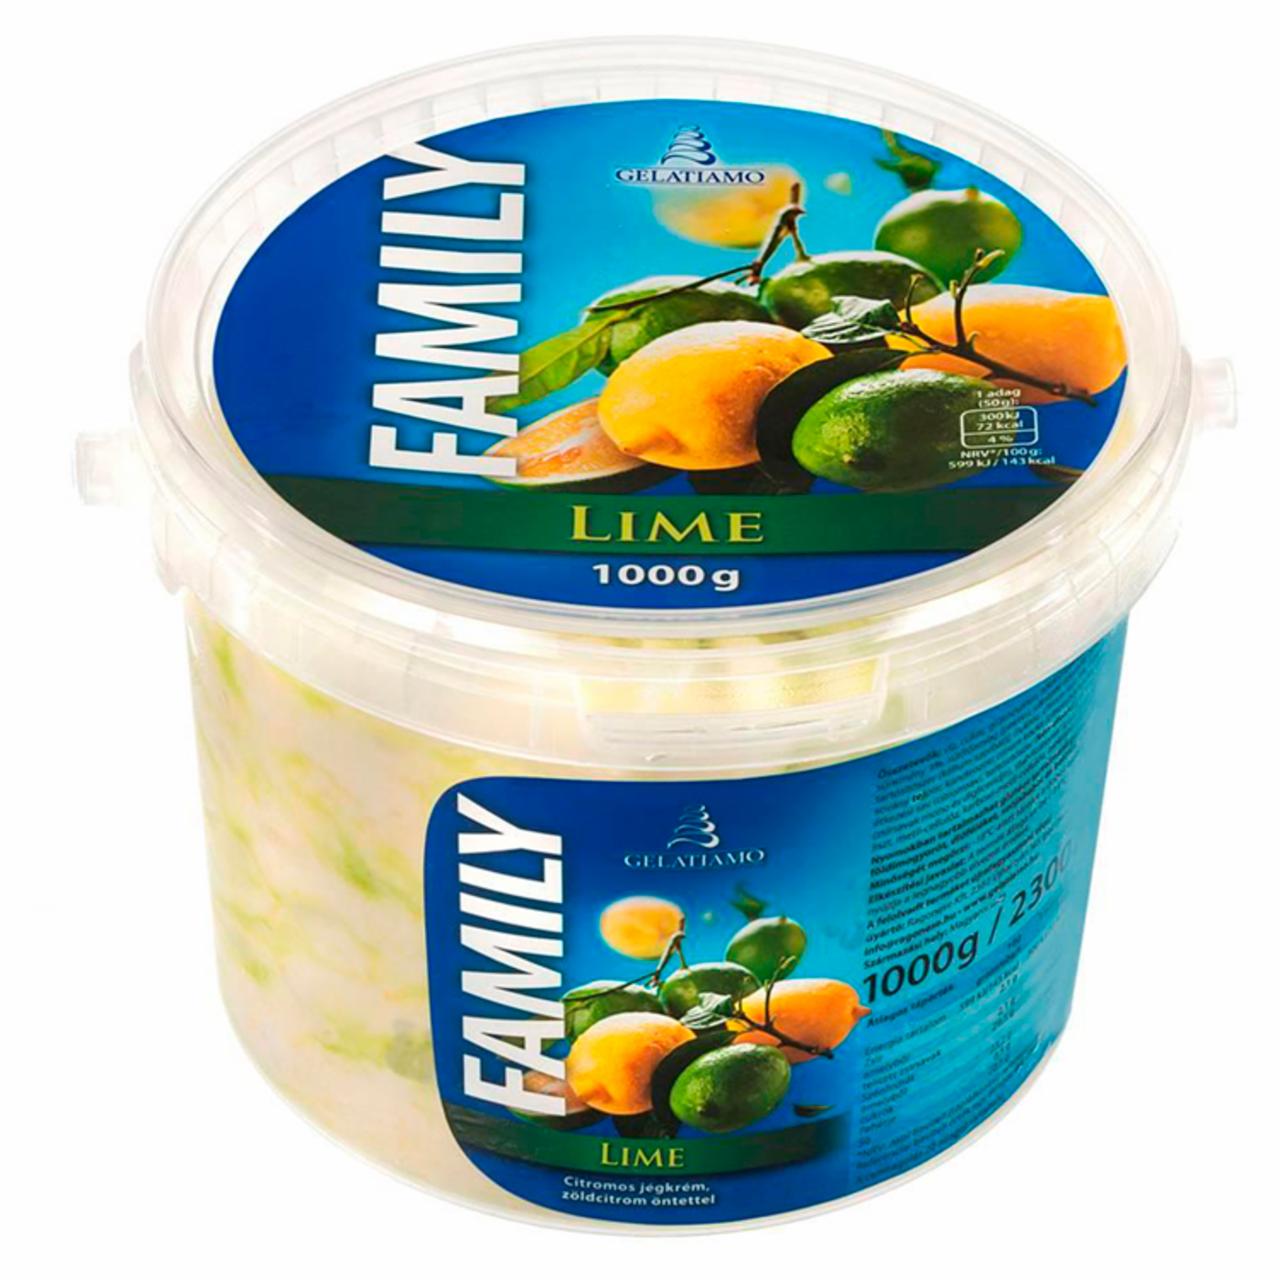 Képek - Gelatiamo Family Lime citromos jégkrém zöldcitrom öntettel 2300 ml